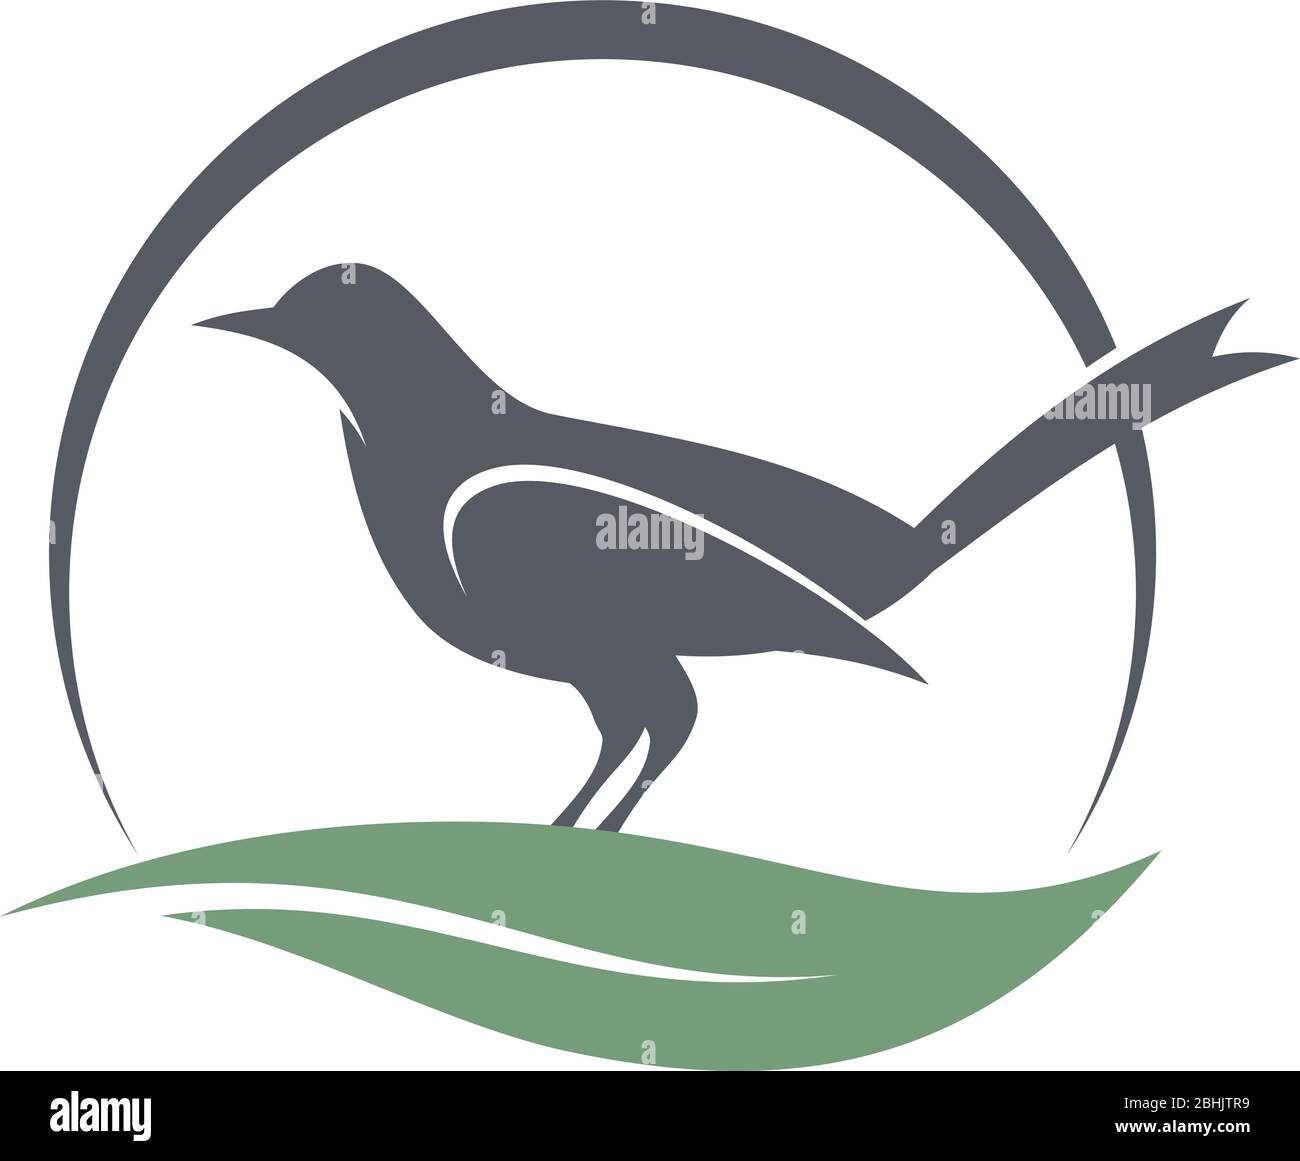 Motif représentant un logo représentant une silhouette d'oiseau avec une feuille d'Swoosh et demi-ronde abstraite. Animal créatif et simple. Illustration vectorielle EPS.8 EPS.10 Illustration de Vecteur